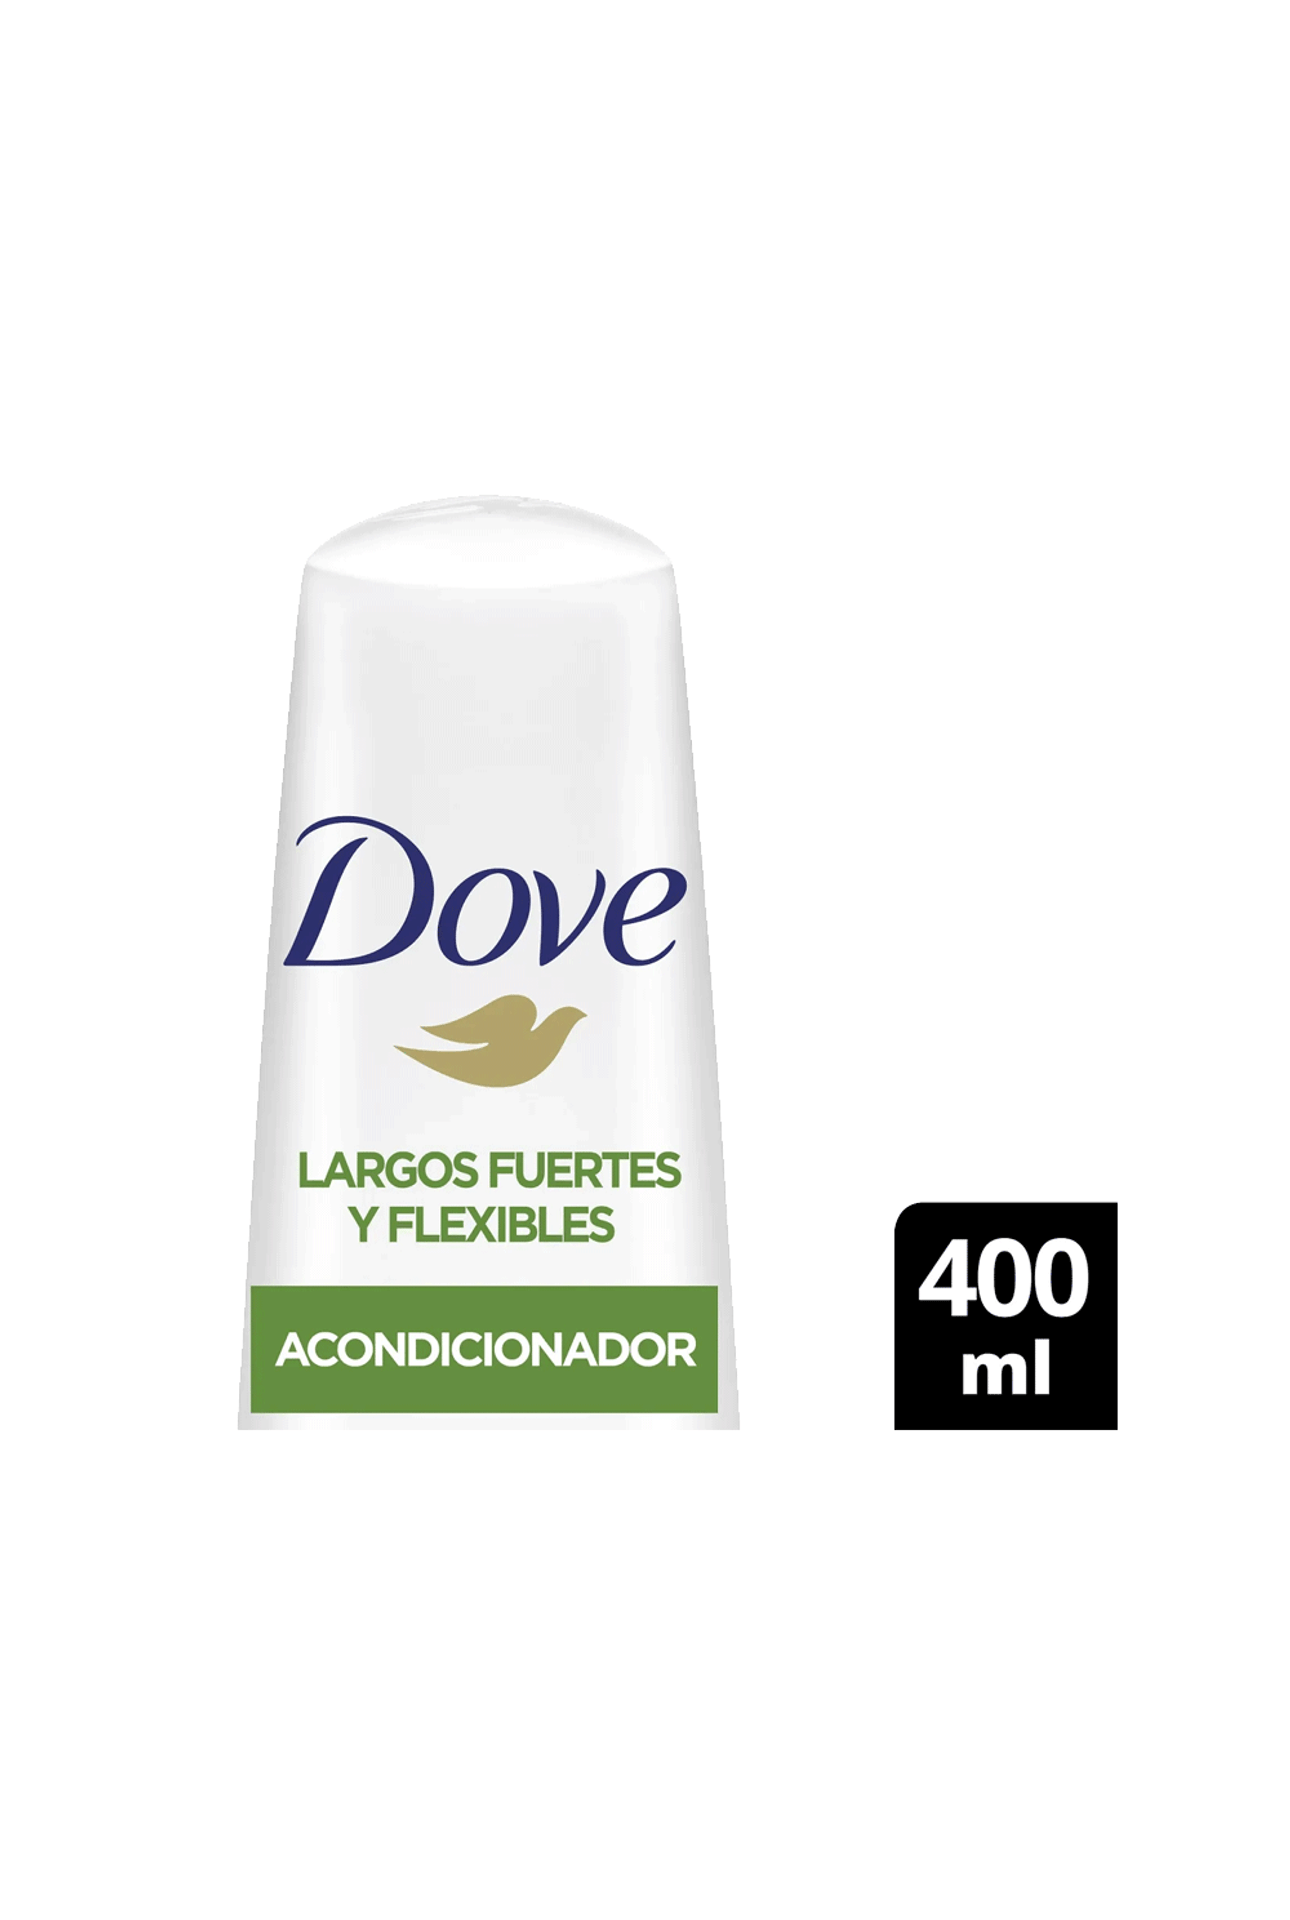 Dove-Acondicionador-Dove-Largos-Fuertes-y-Flexibles-x-400-ml-7791293050362_img1